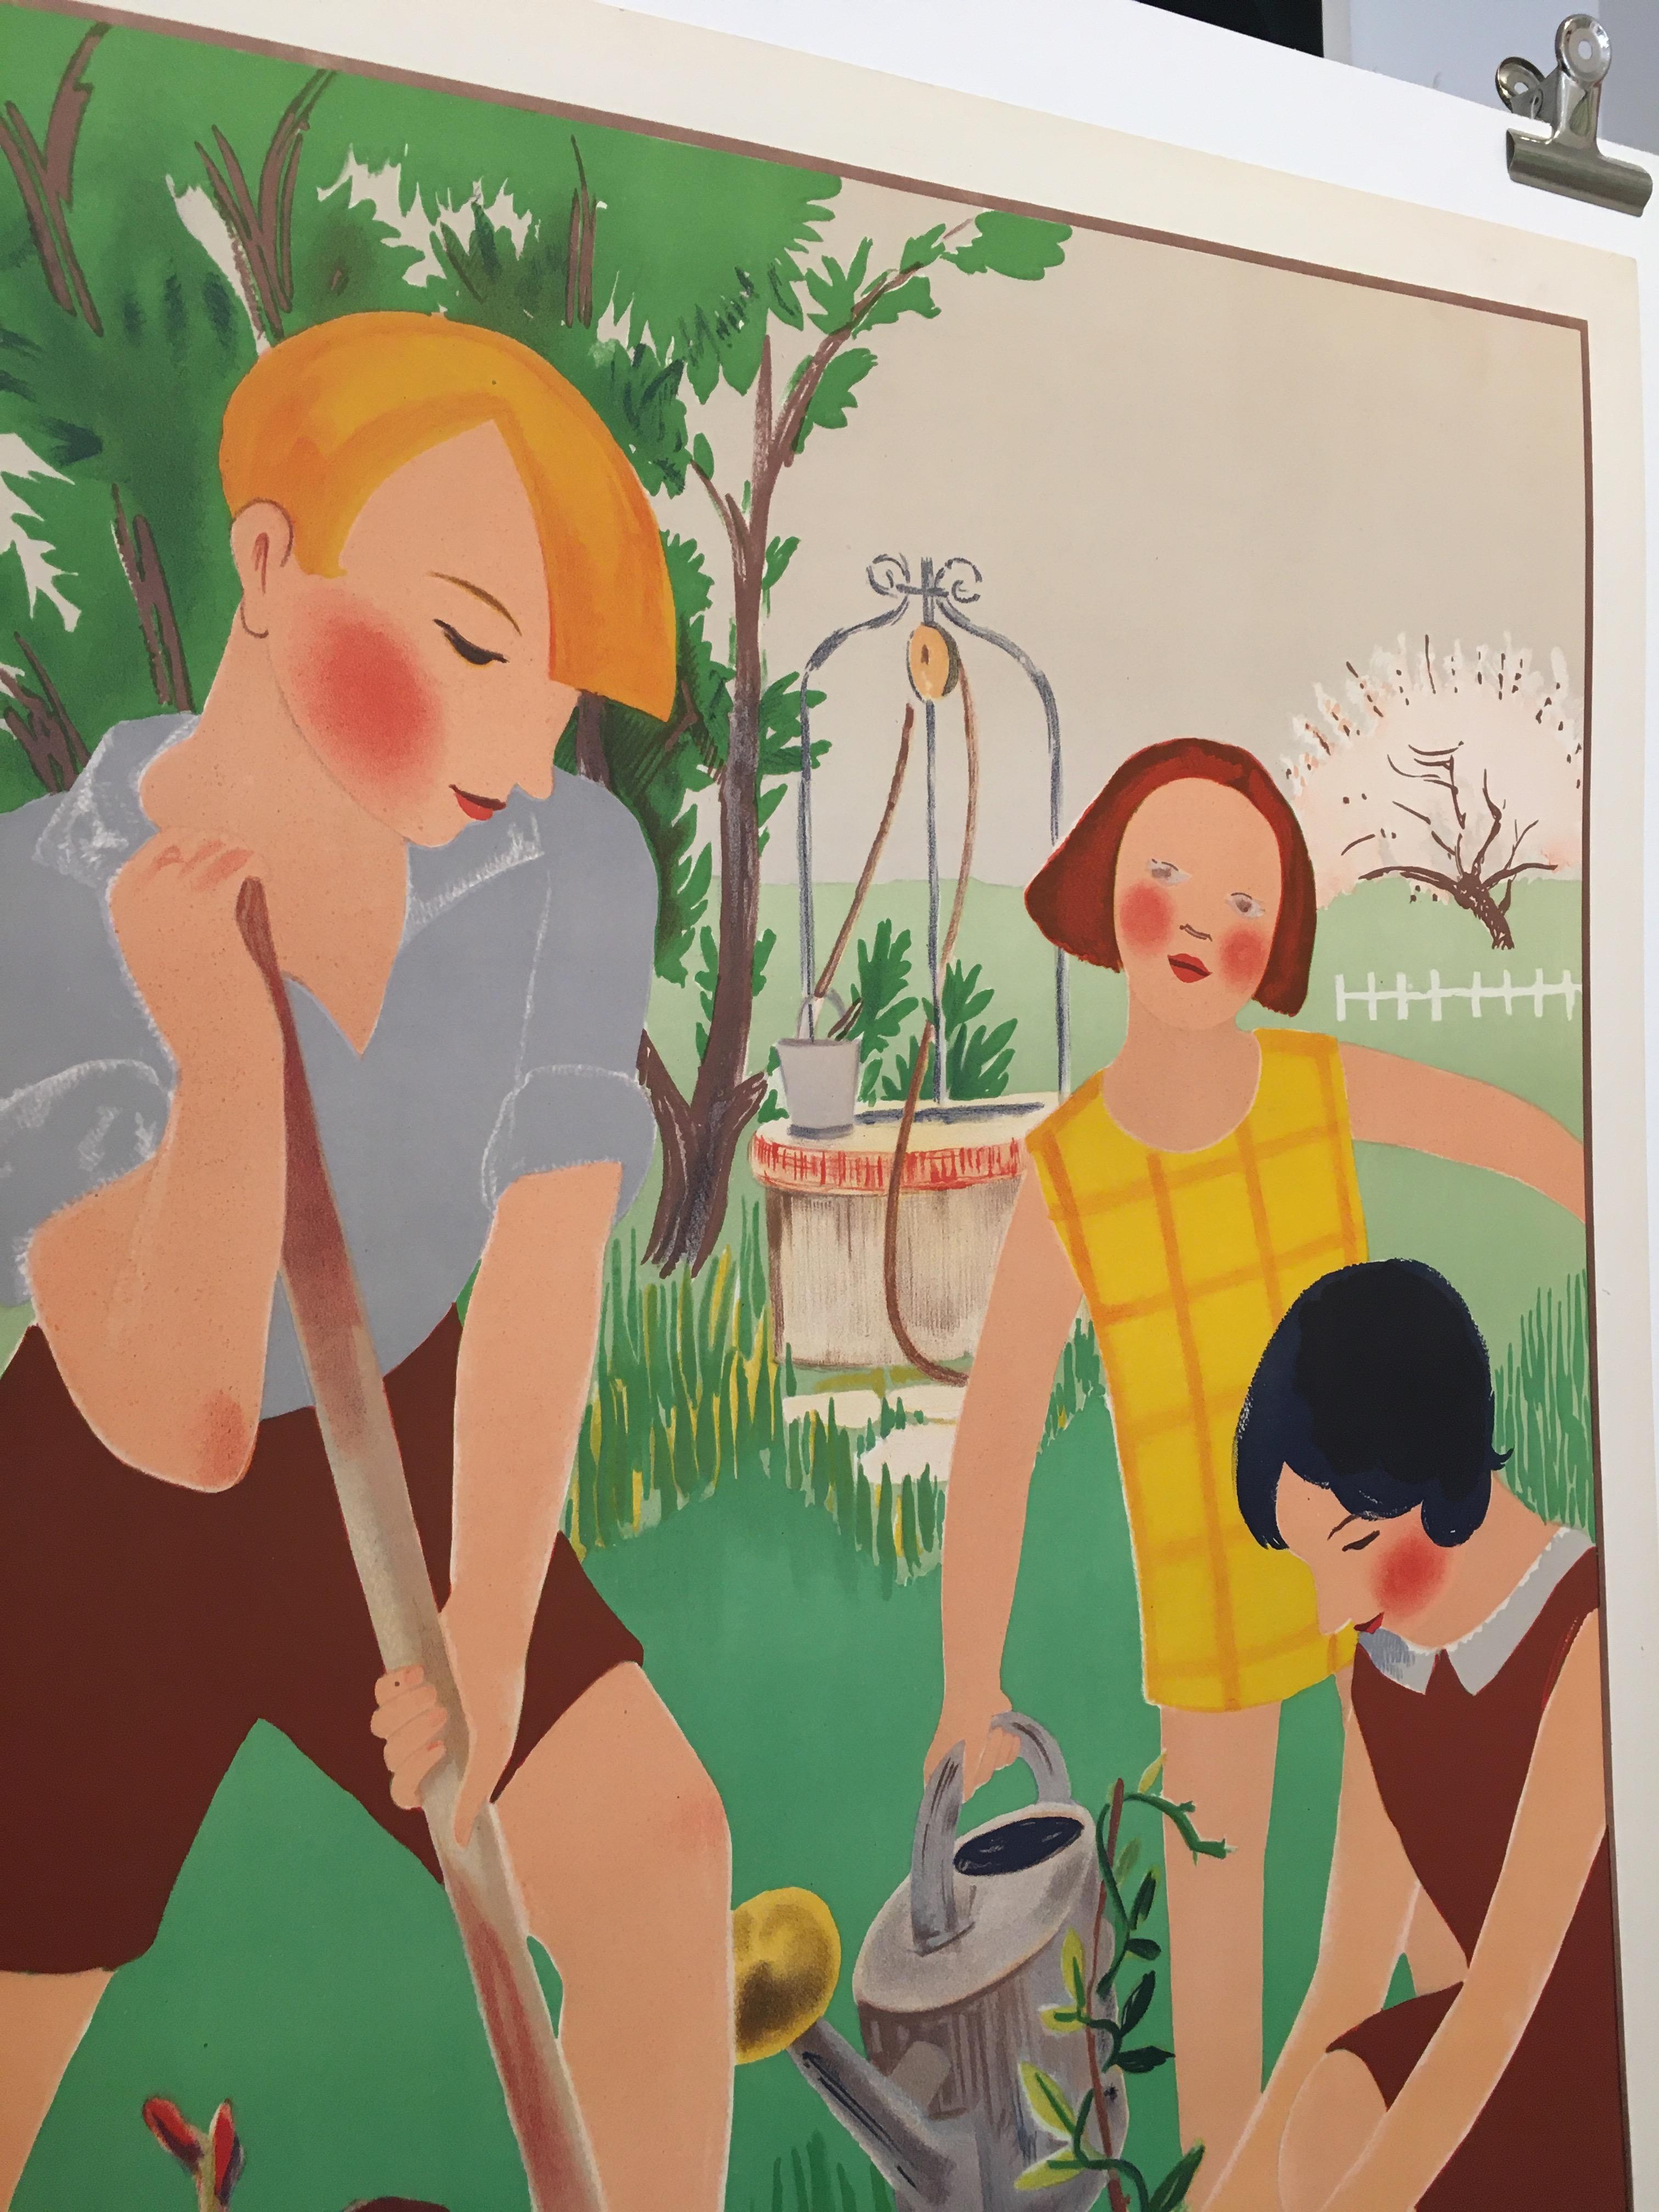 Original Vintage Art Deco Gardening Poster, 'L' Art L'Ecole', 1931 von R. Rochette

Original Art-Déco-Plakat, das Kinder bei der Gartenarbeit zeigt. Dieses Plakat wurde von R. Rochette entworfen, das Plakat selbst ist in gutem Zustand und wurde